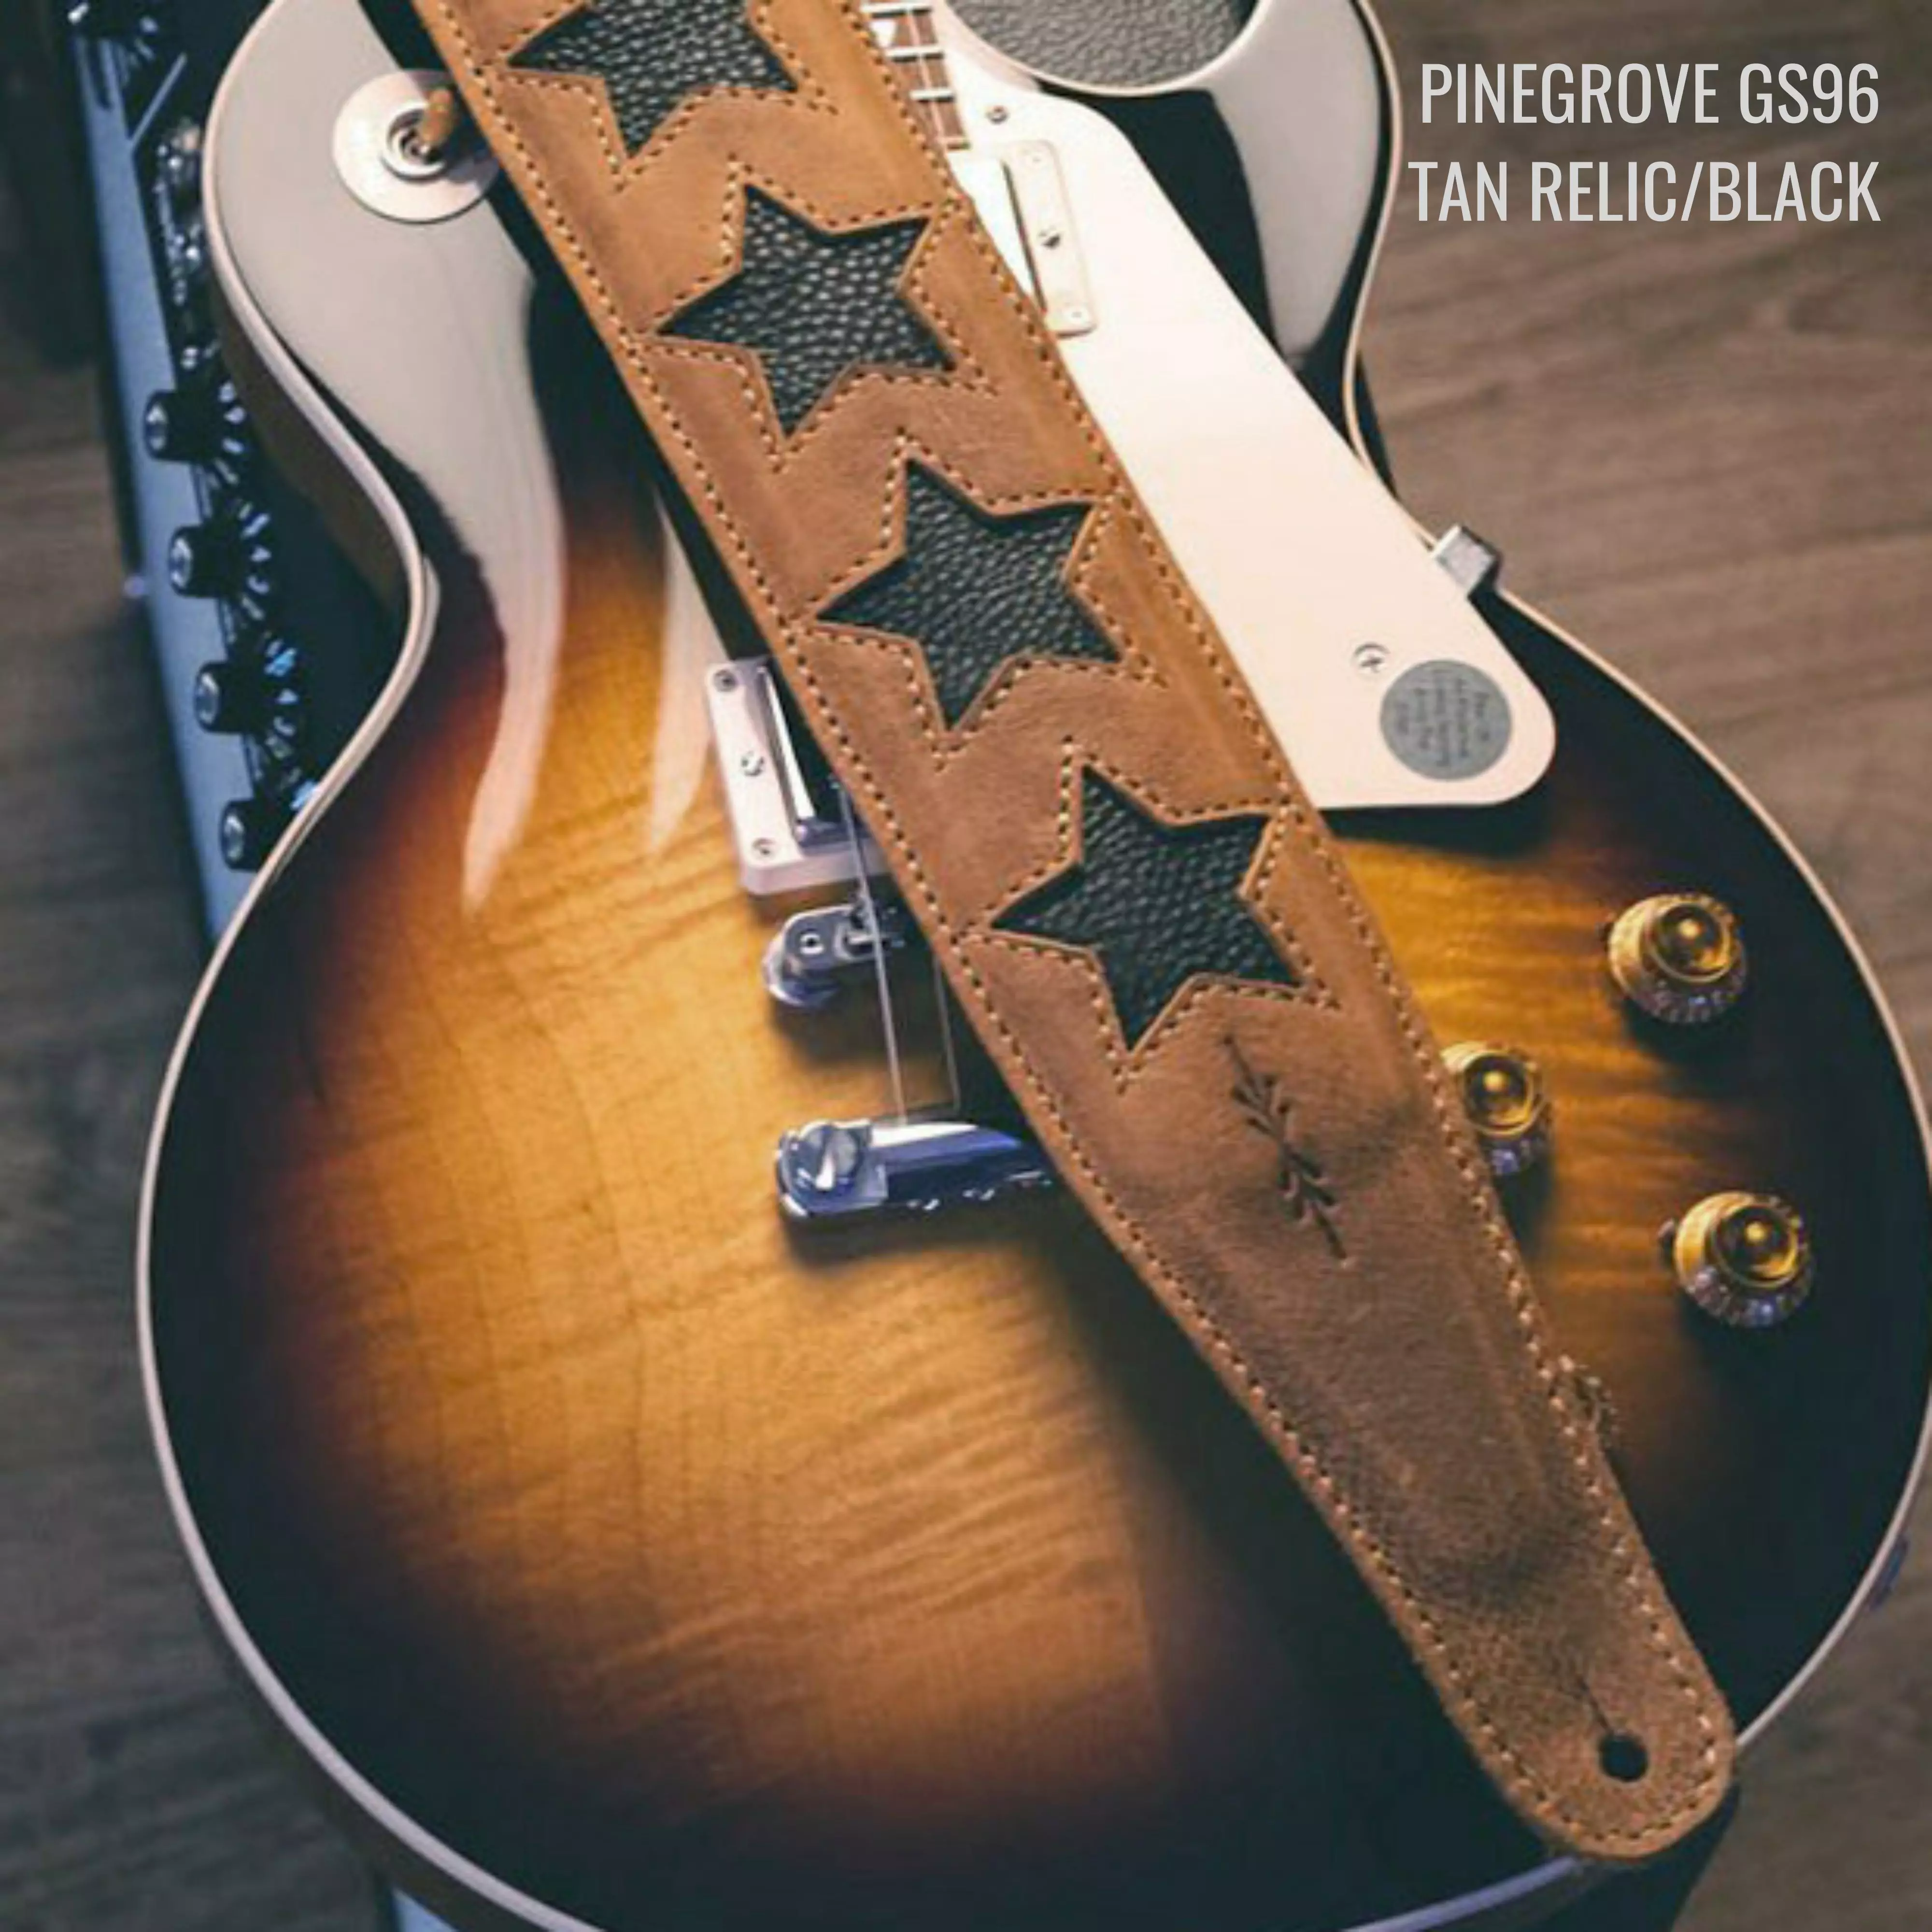 Pinegrove GS96 relic tan black stars guitar strap ANNO.jpg